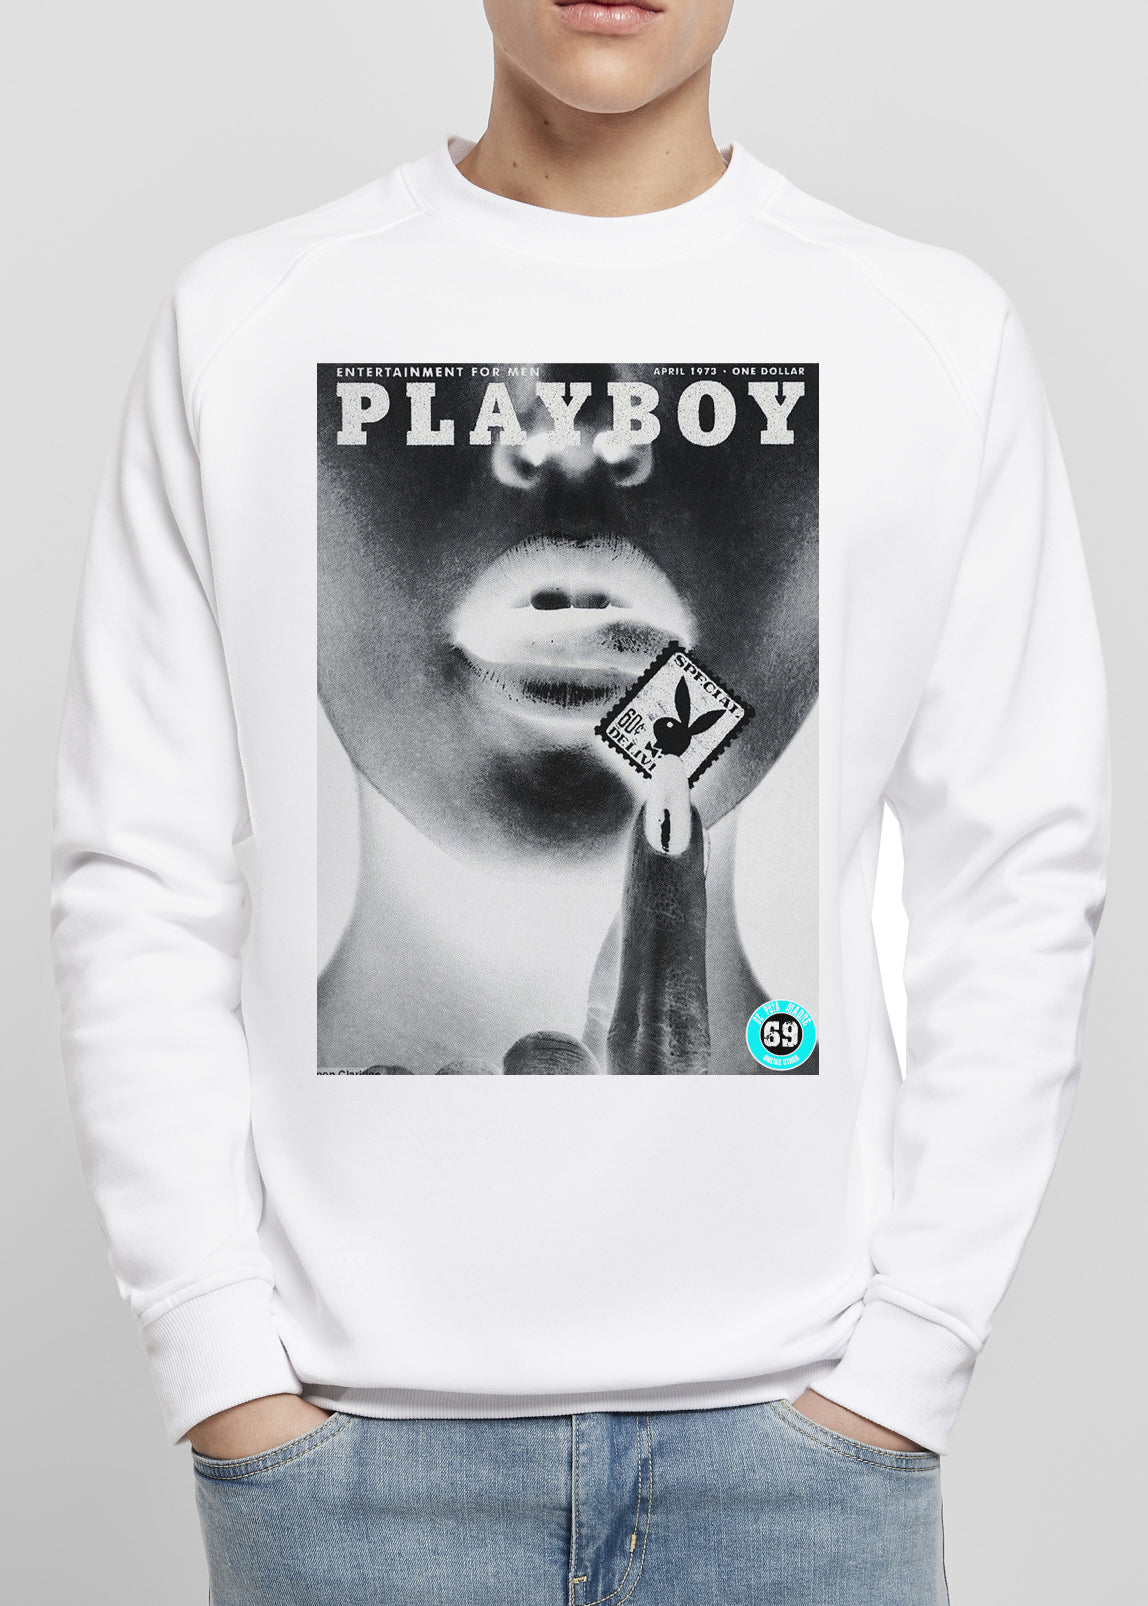 DPM 69 Men's sweatshirt design  PlayB0y